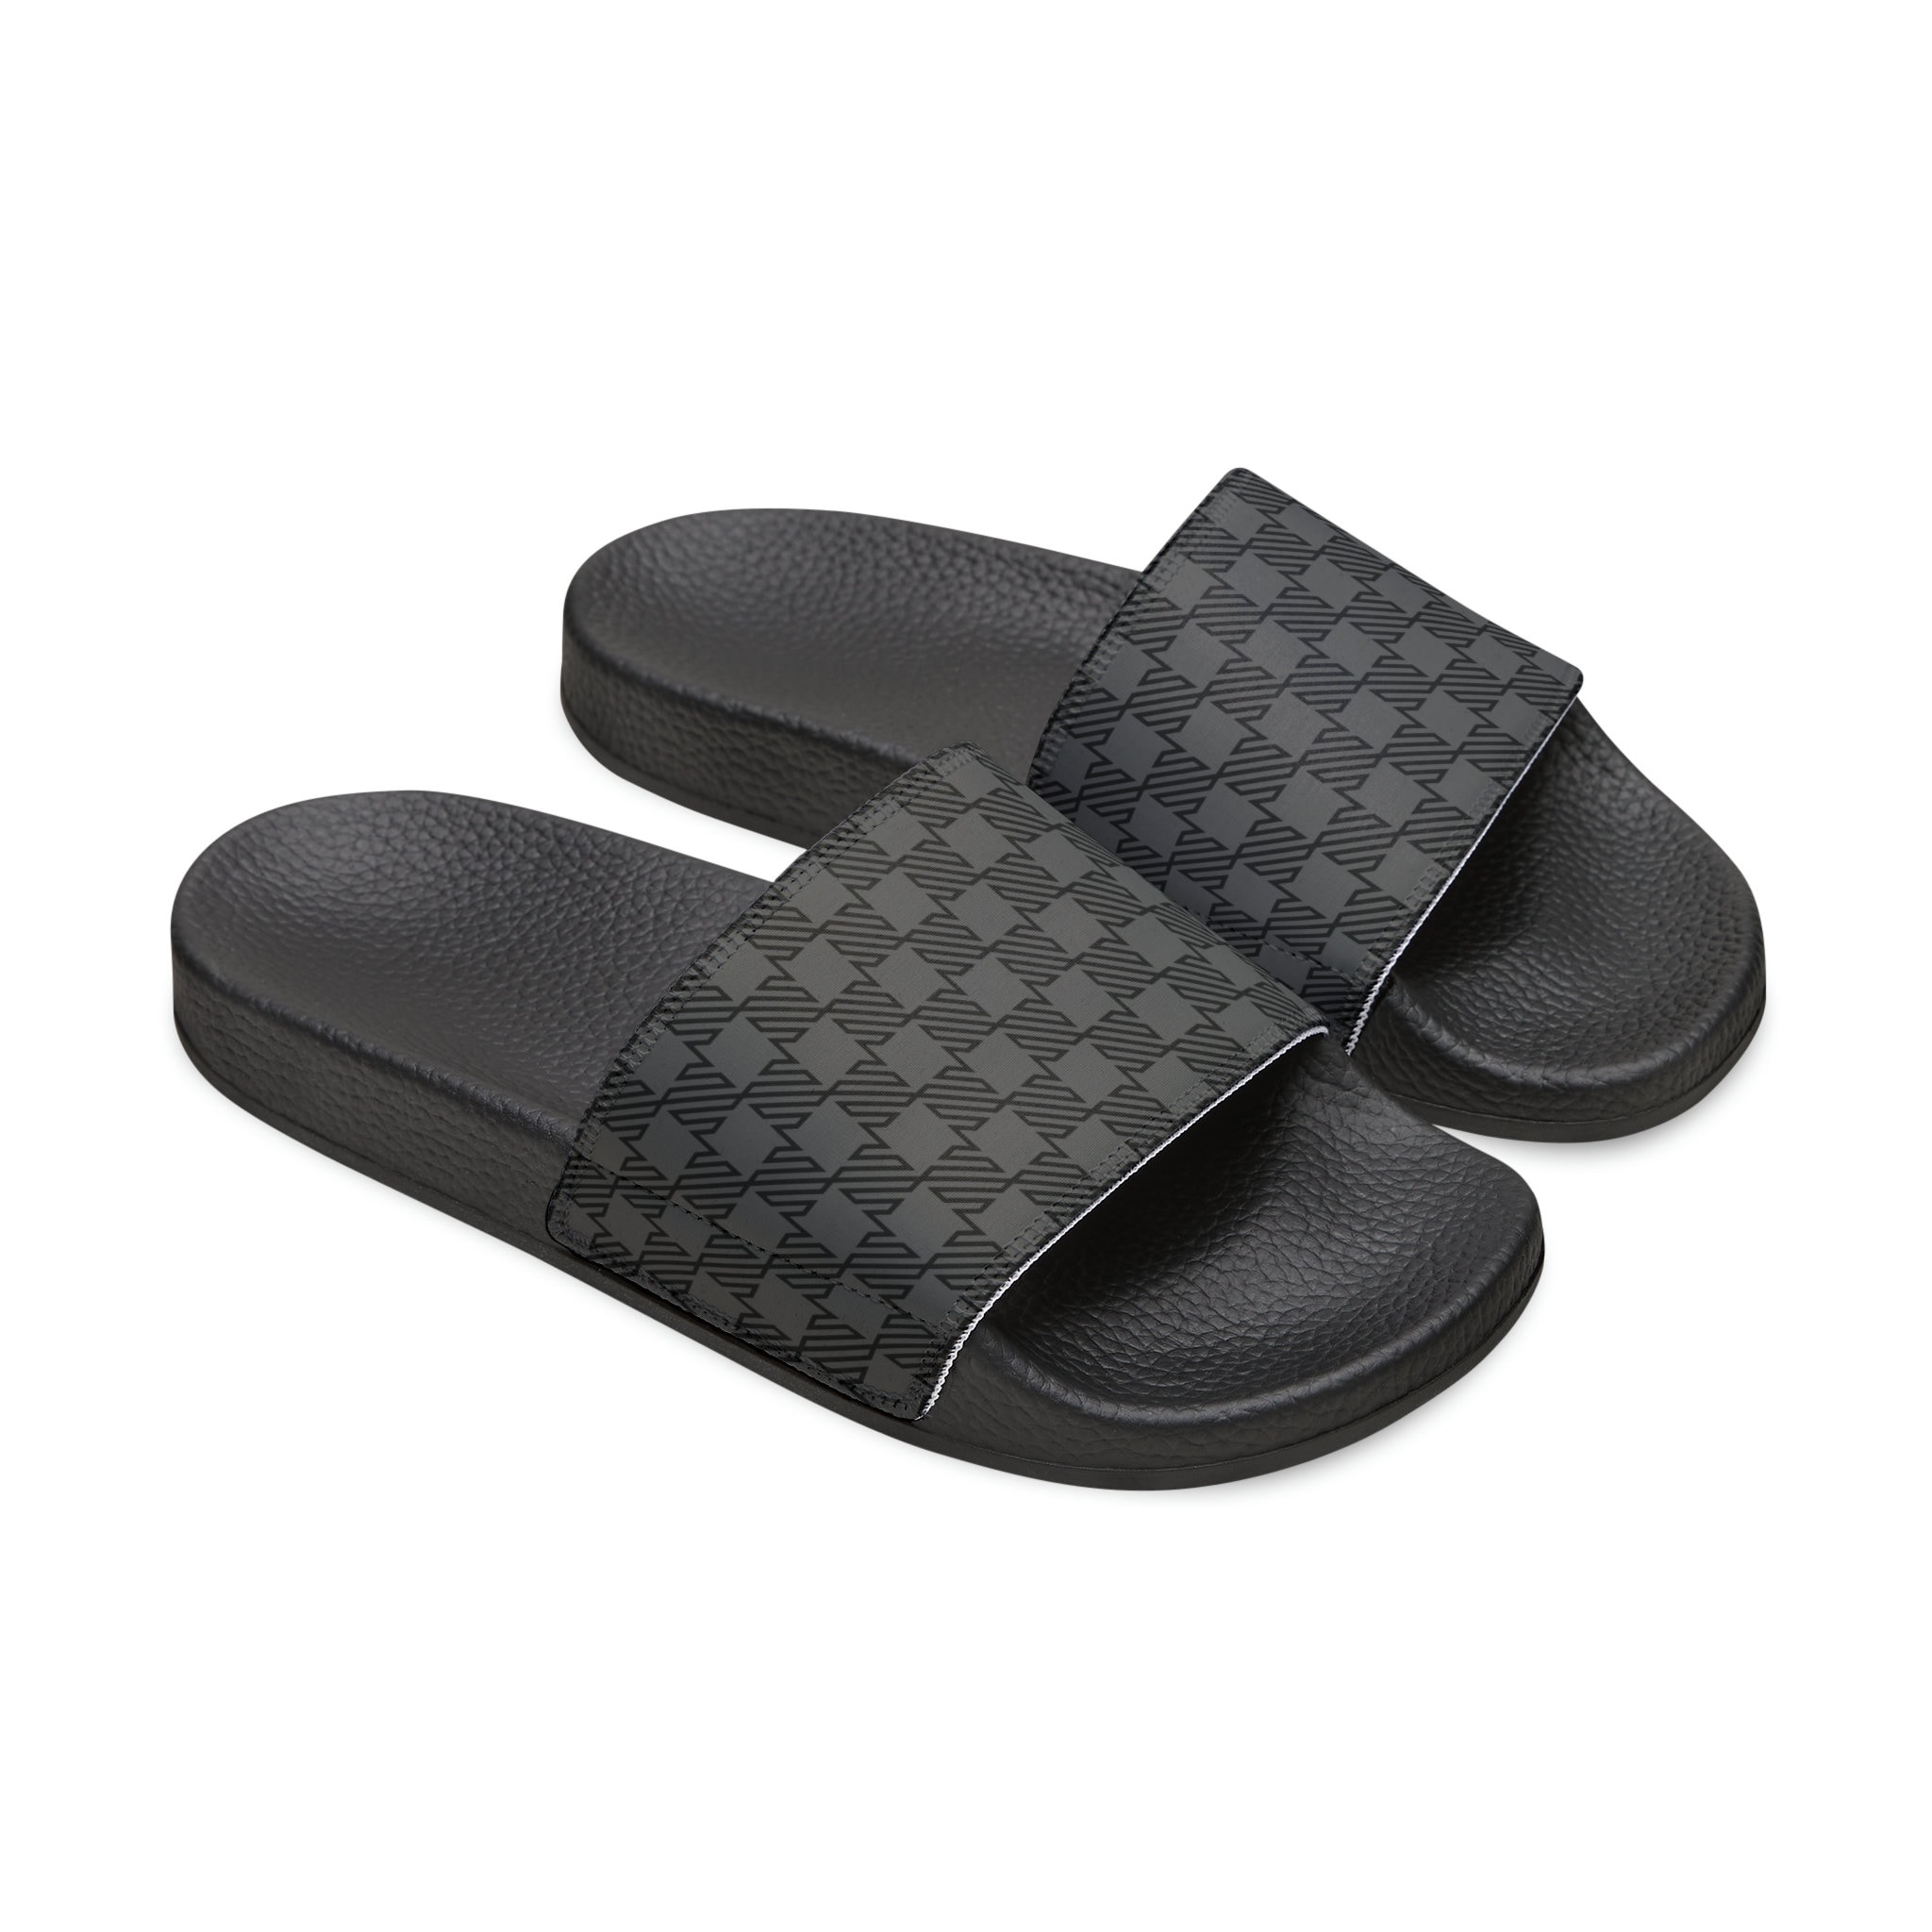 Louis Vuitton Sandals for Men